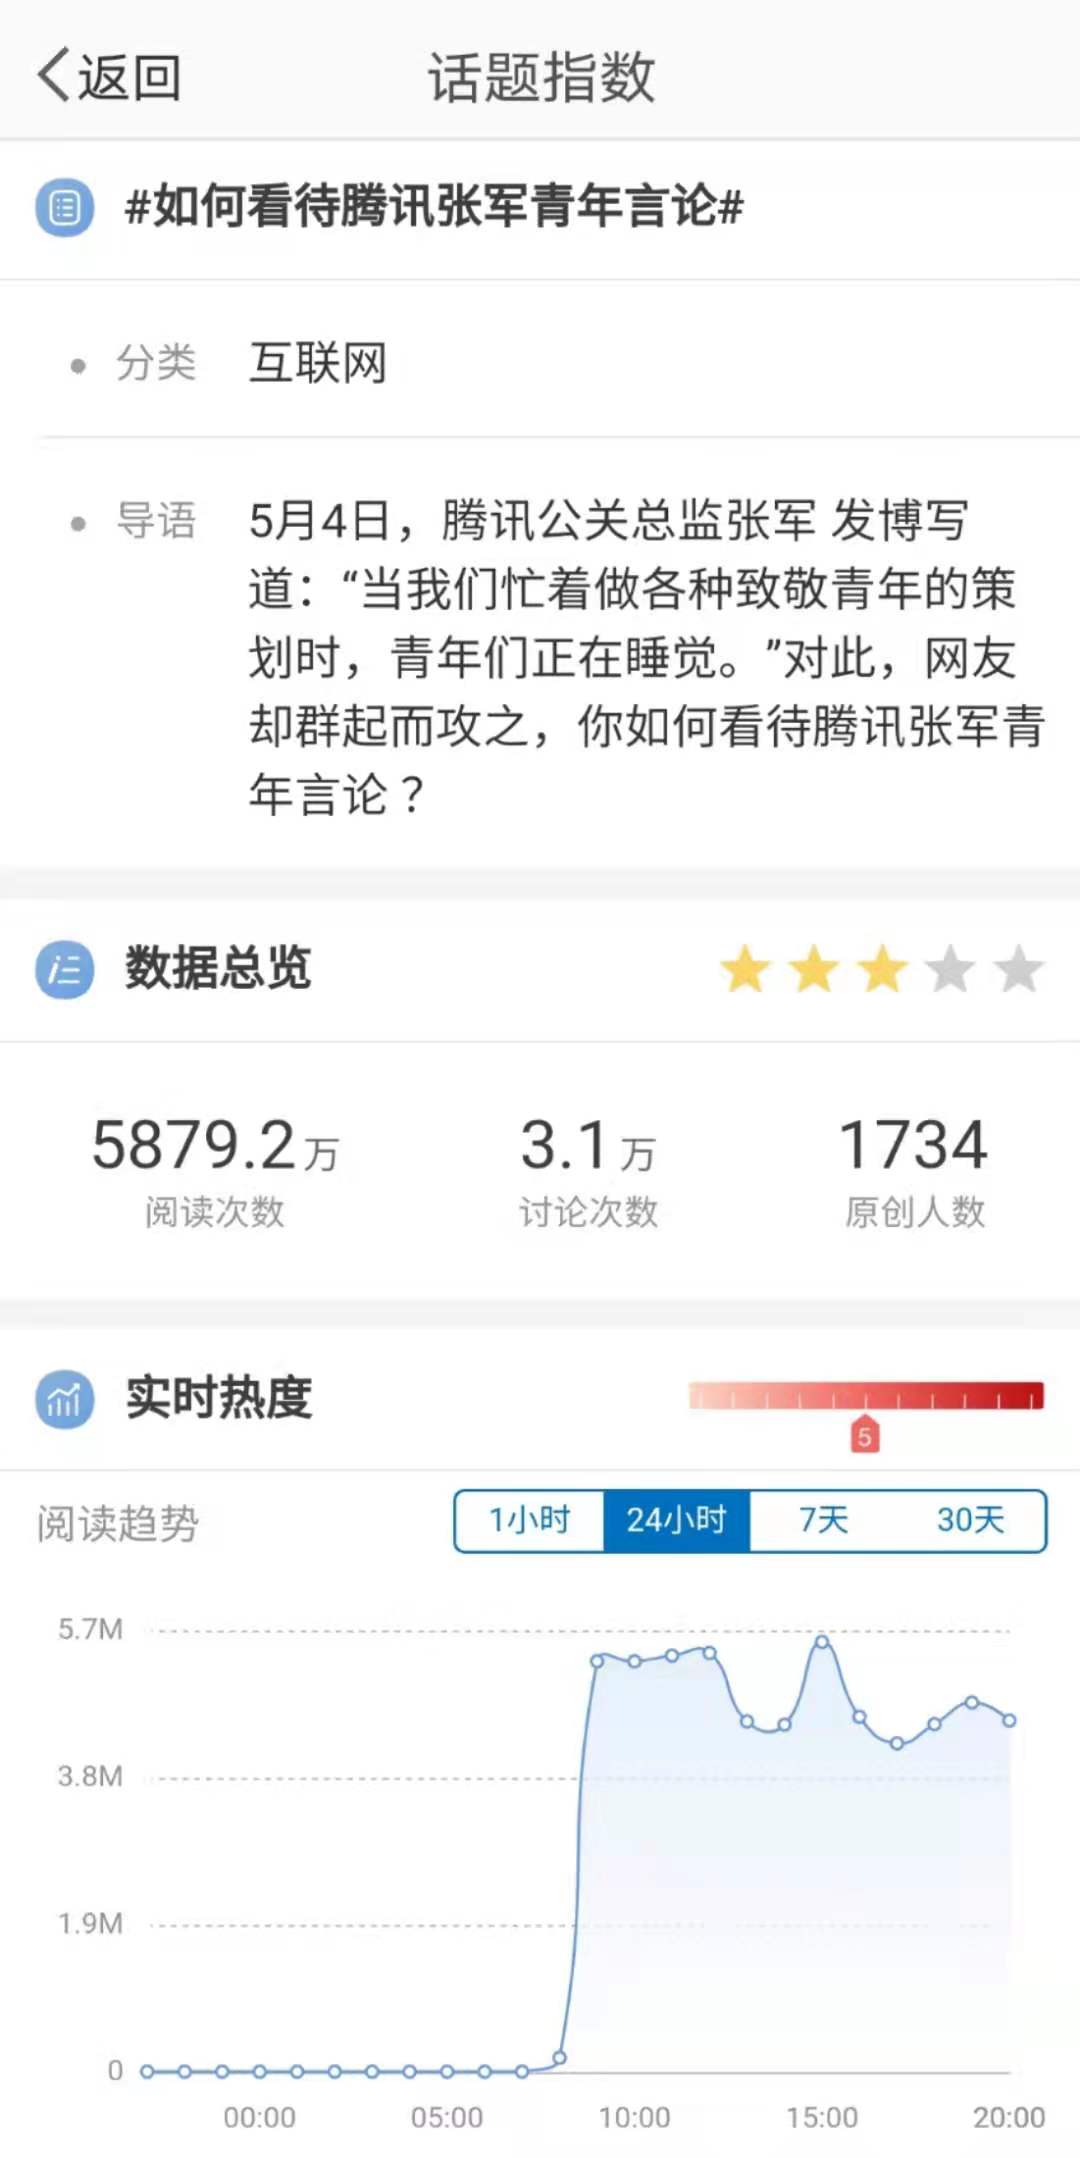 腾讯公关总监微博引发争议 网友：怎么假期还不能睡个懒觉吗